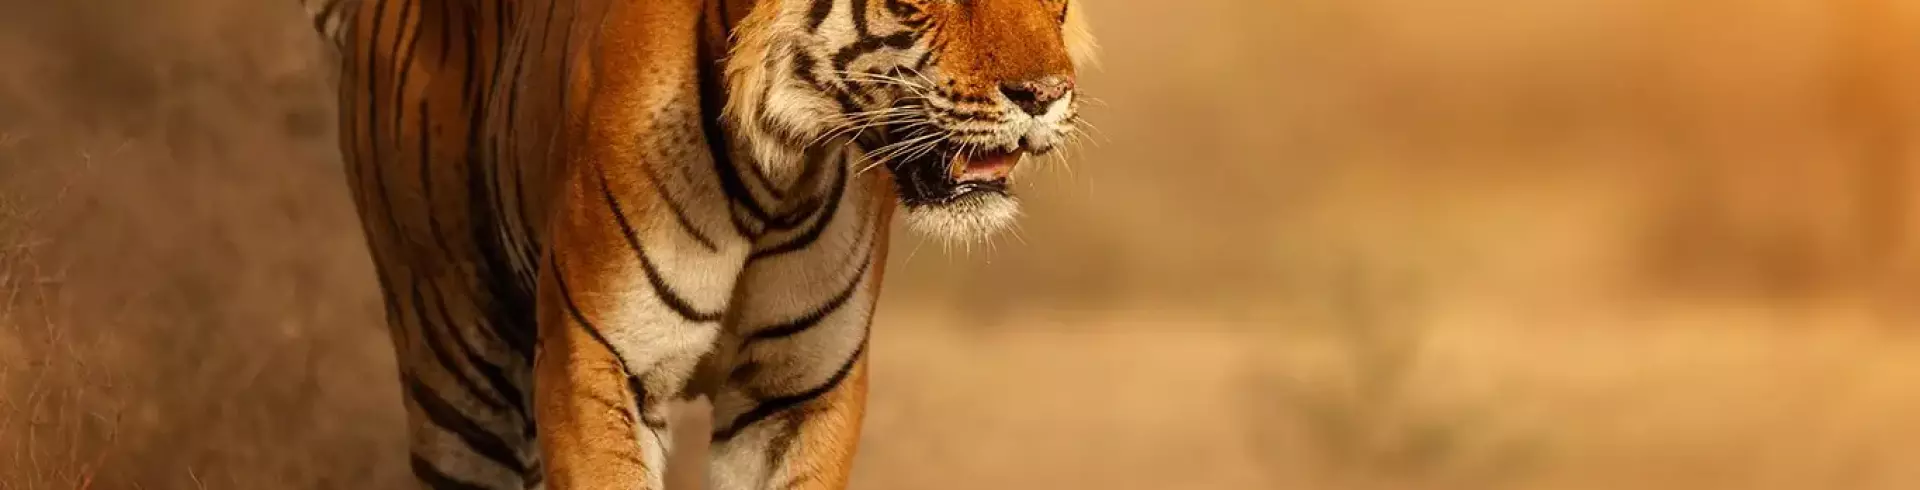 Indie - Złoty Trójkąt z tygrysem